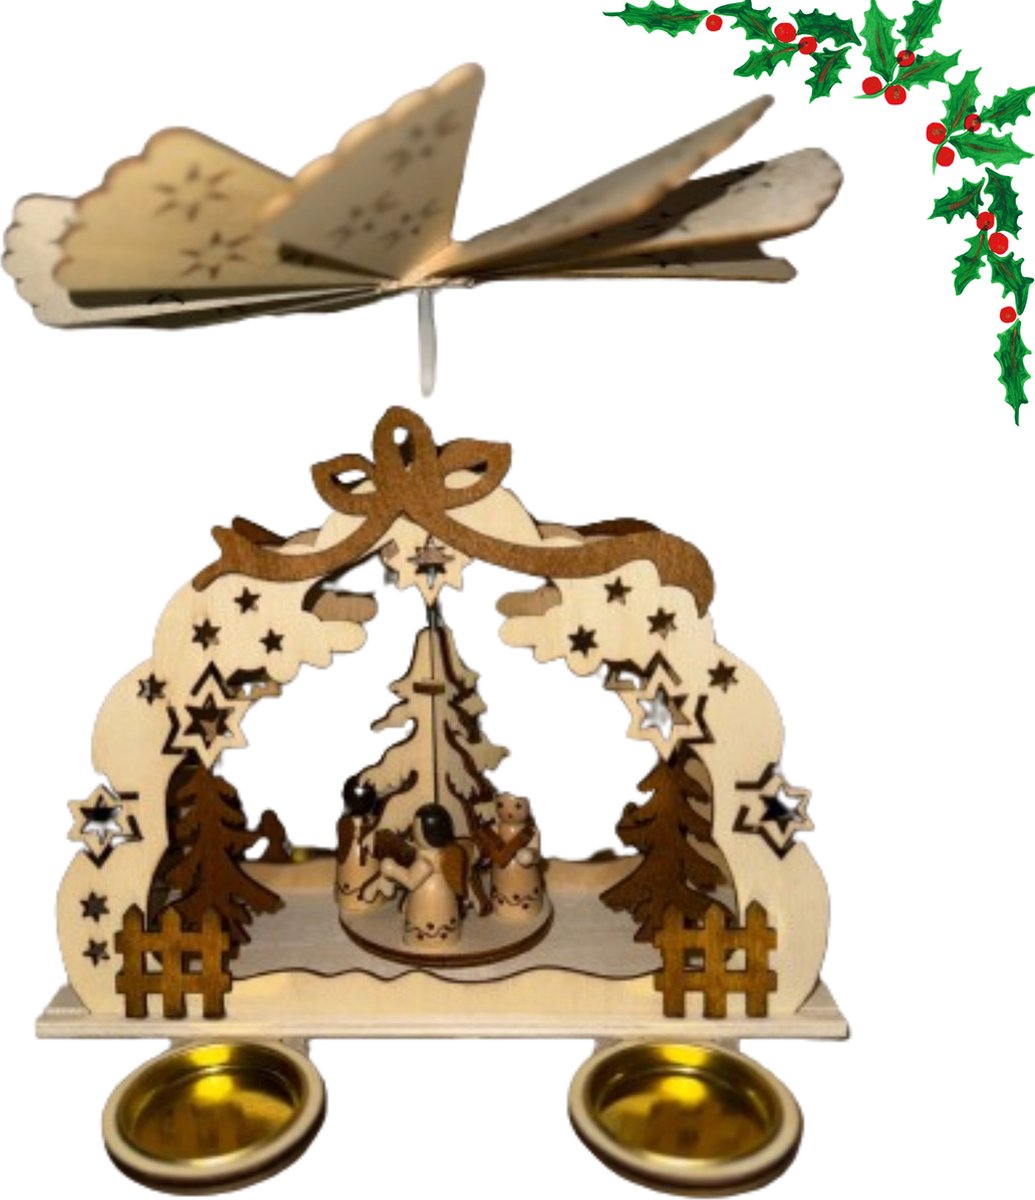 Seasony Handgemaakte Houten Kerstboom - Houten Kerstboom Voor Binnen - Alternatieve Kerstboom - Houten Kerstboom Decoratie